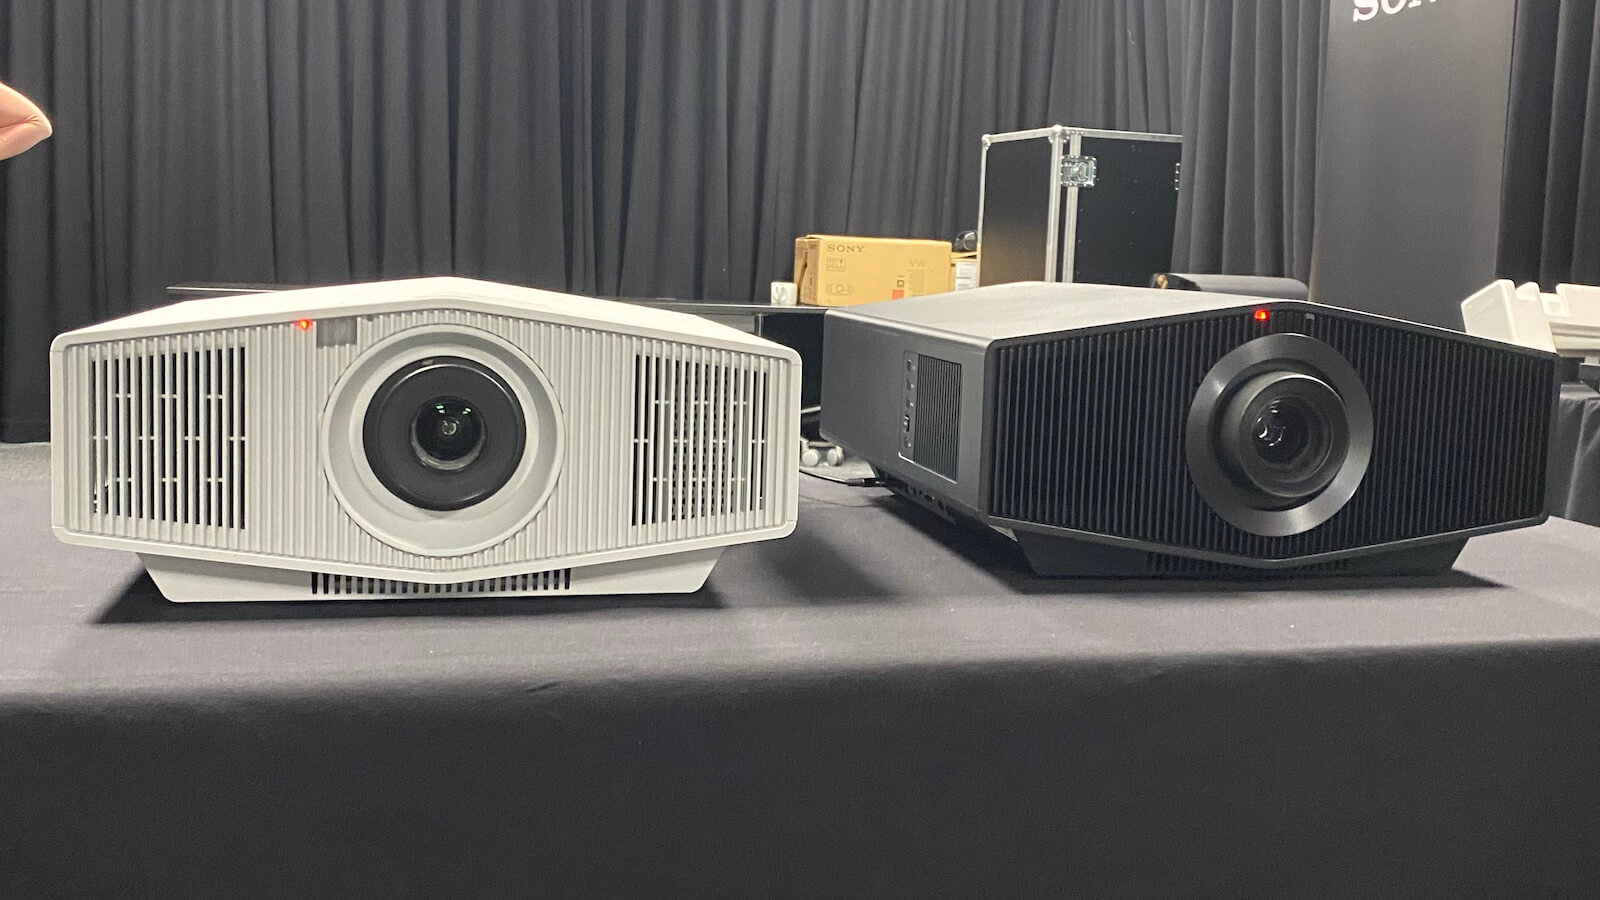 Sony представляет два новых лазерных проектора 4K